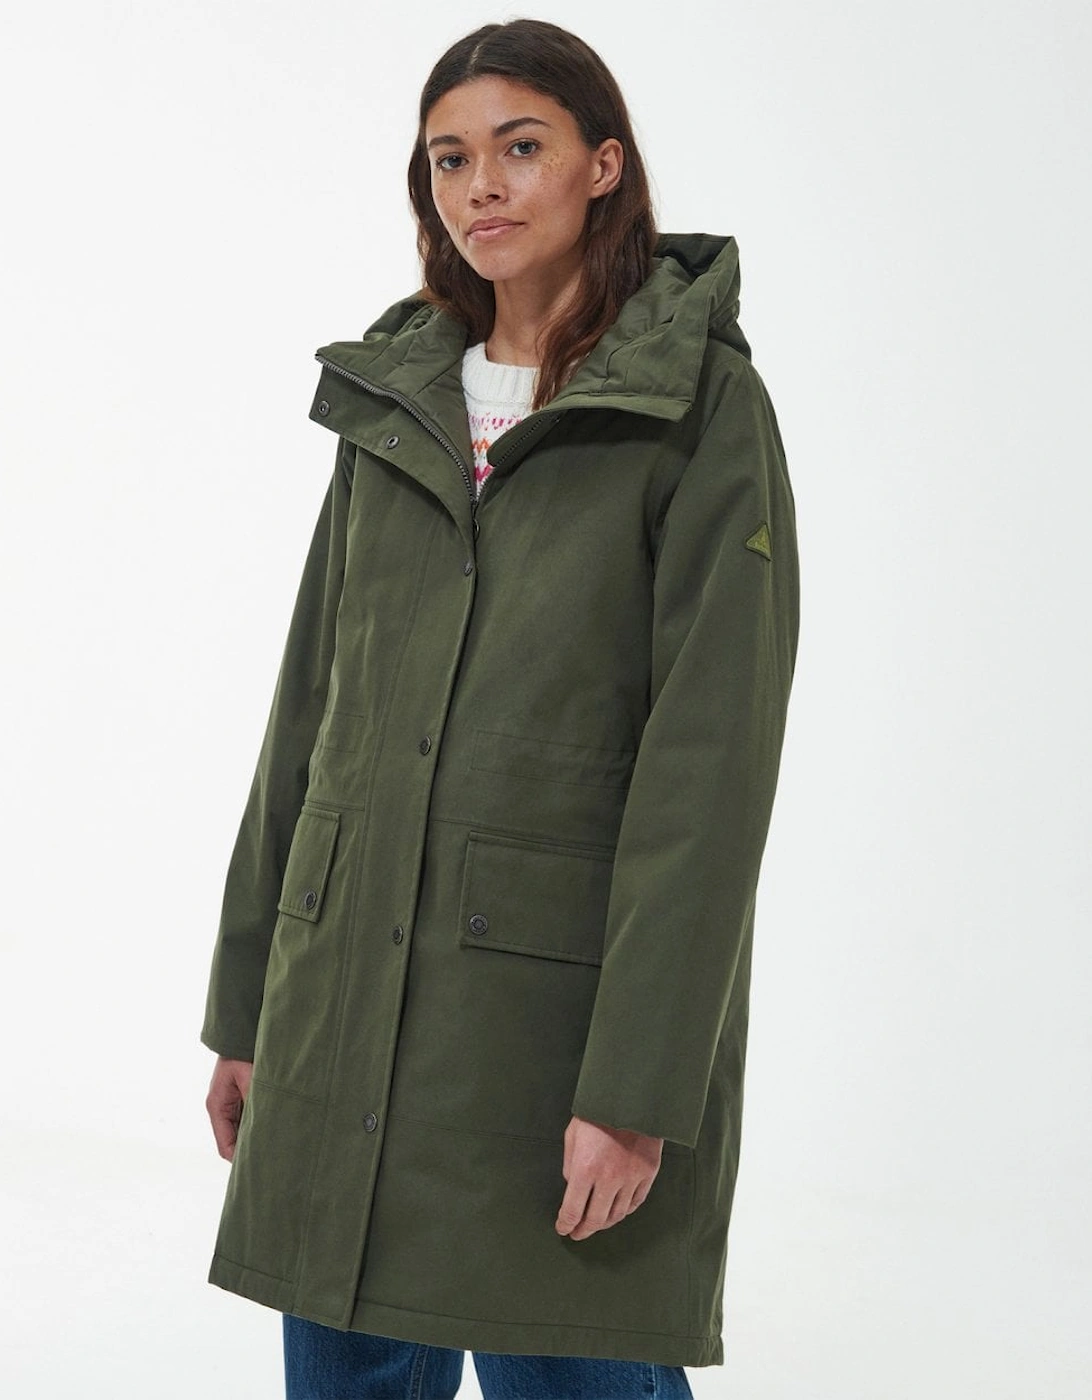 Mersea Womens Waterproof Jacket, 9 of 8